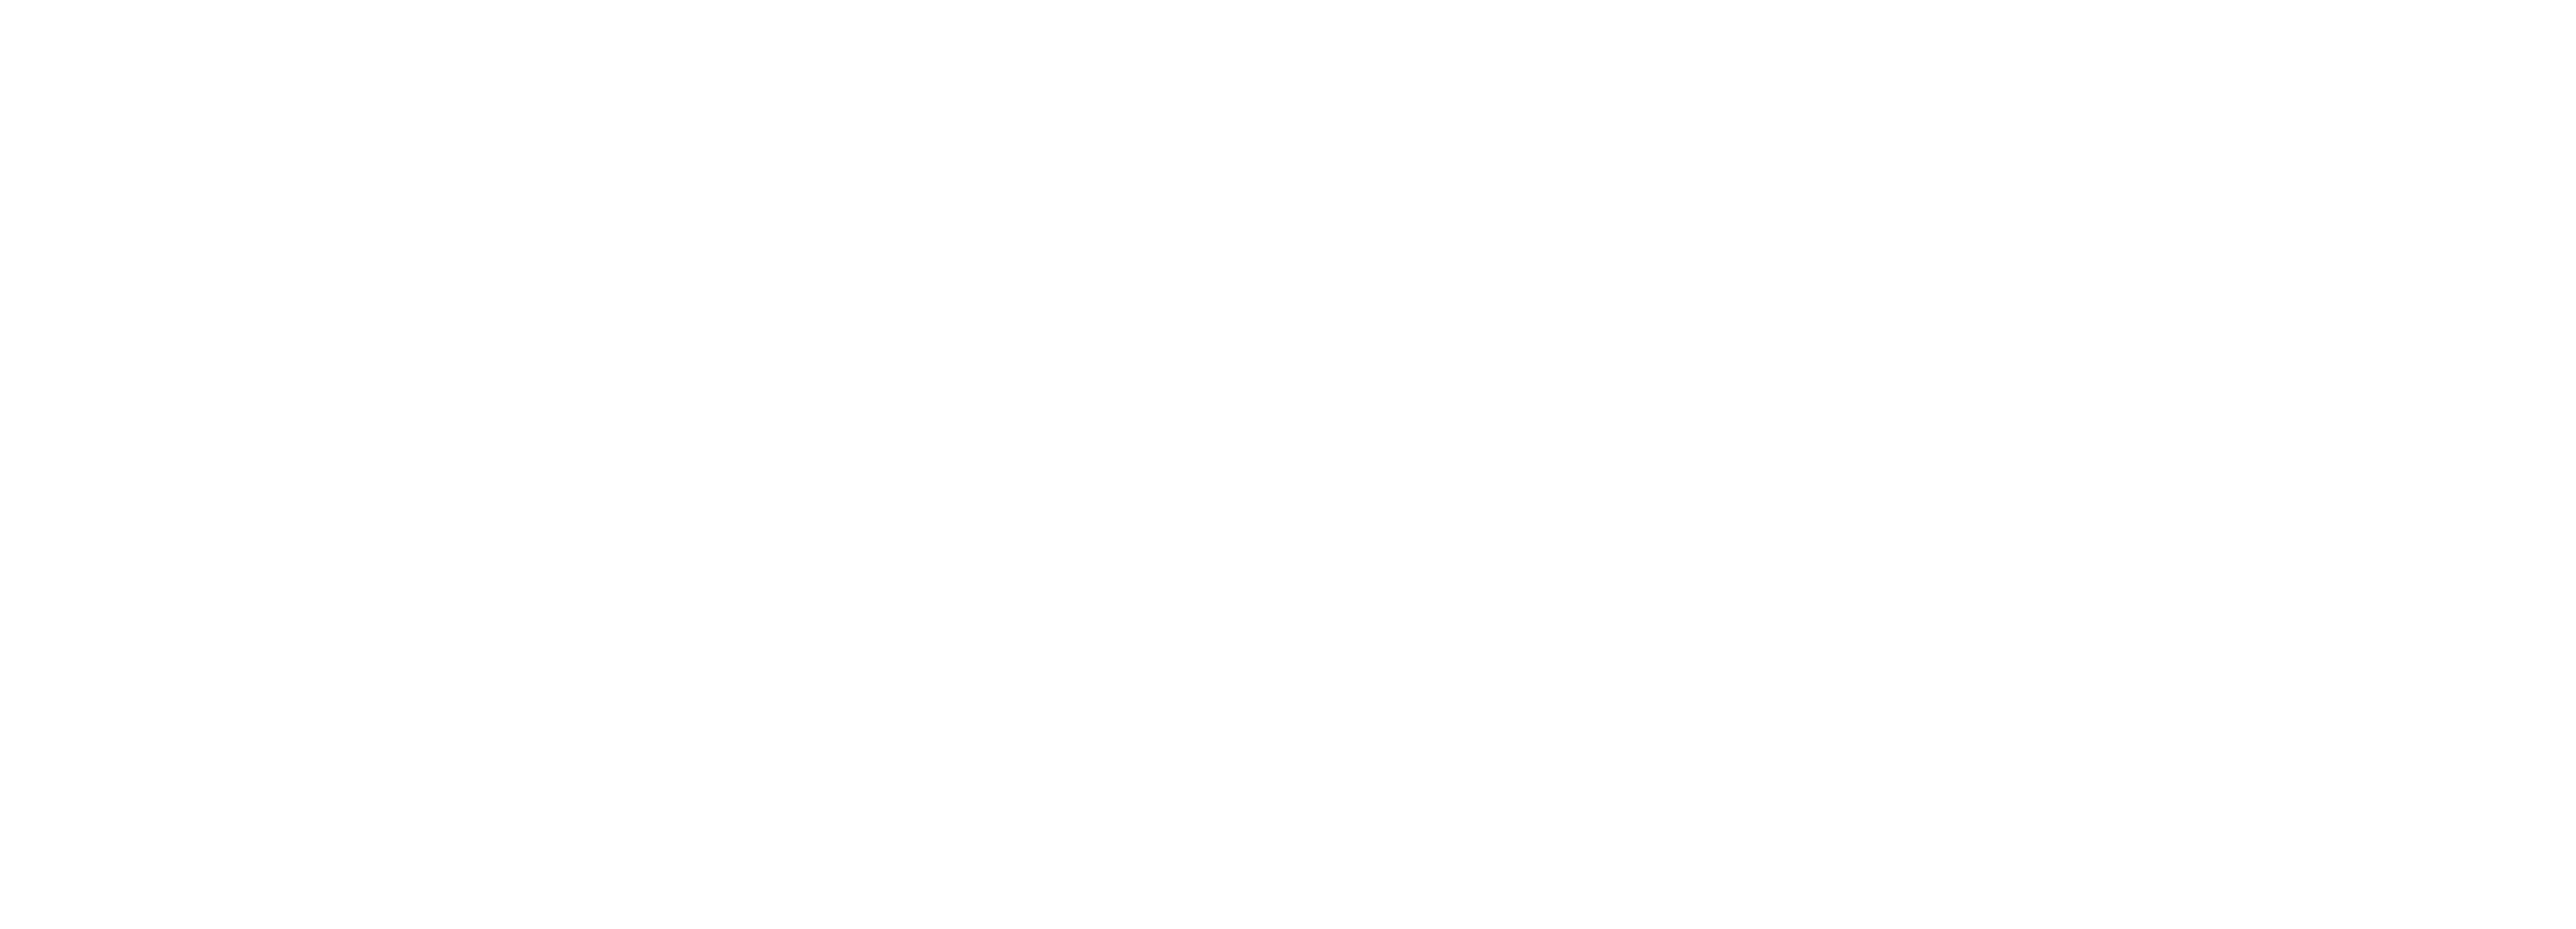 logo saint germain boucles de seine tourisme